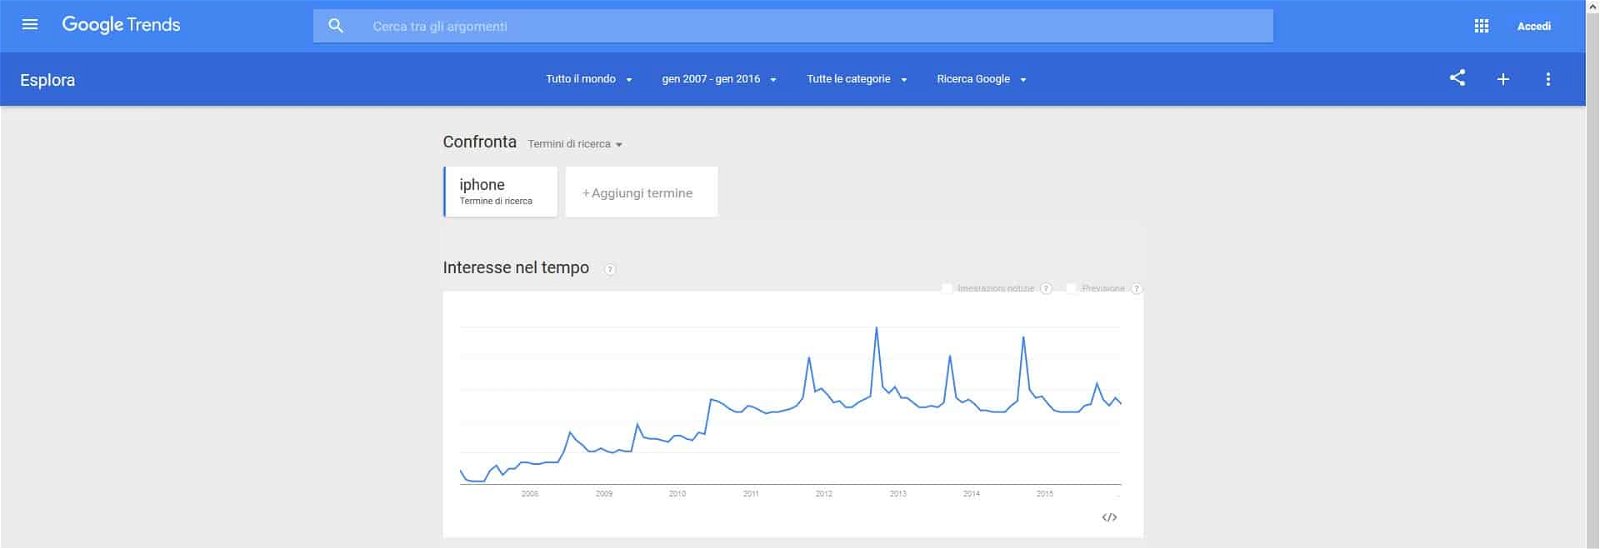 Google Trends grafico dell'interesse